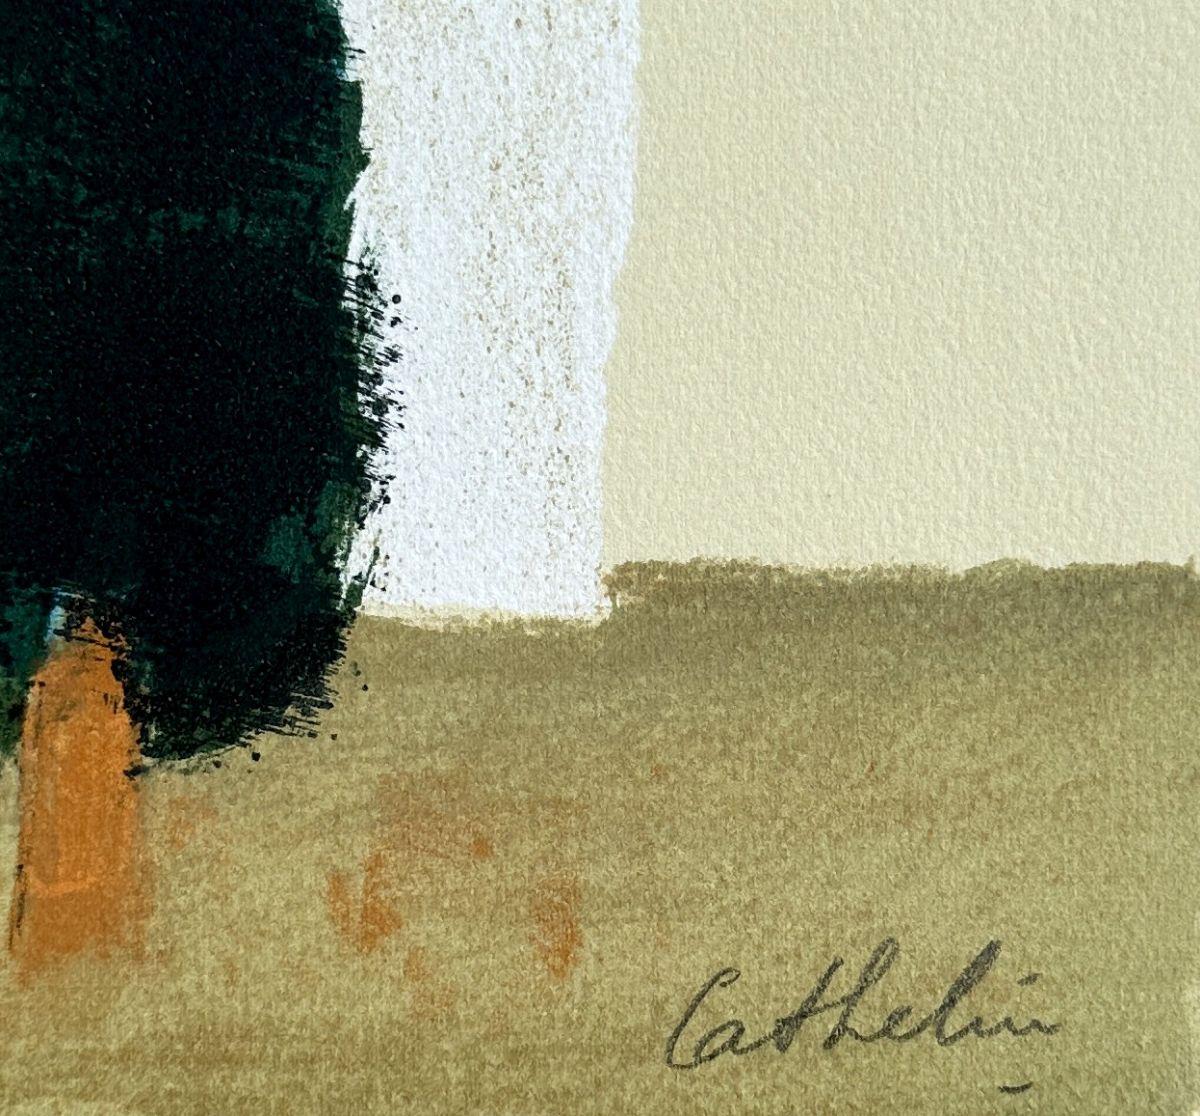 Bernard CATHELIN
Bäume in der Provence

Original-Lithographie, 1988
Handsigniert mit Bleistift
Eingeschrieben EA (épreuve d'artiste) neben der Auflage von 100 Exemplaren
Auf Arches-Papier, Format 40 x 31 (ca. 15 8/10 x 12 1/5 Zoll)
Sehr guter